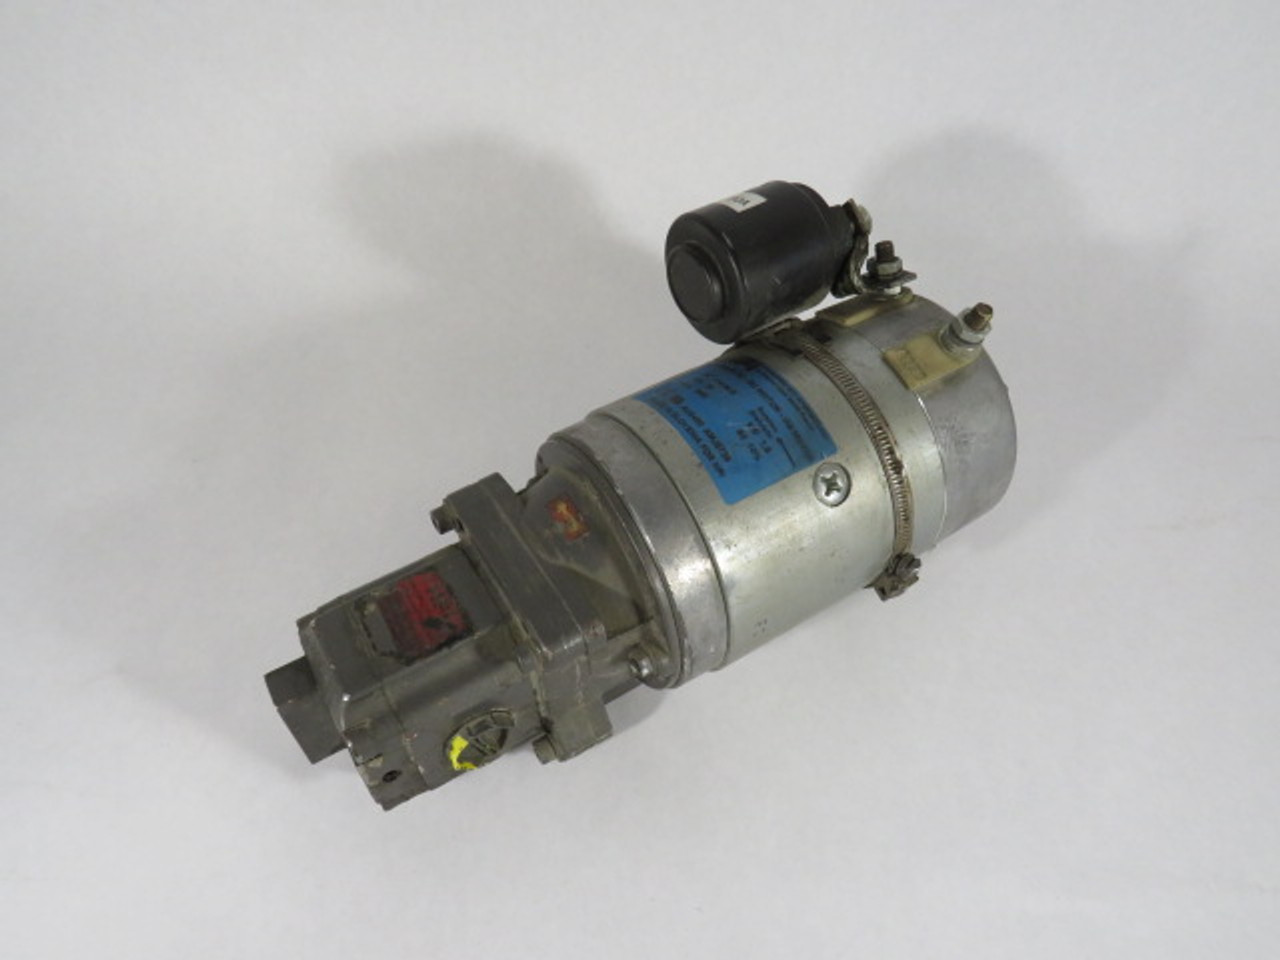 HPI 114134E DC Motor for Pump 1.5kW 3000rpm 24V TEFC 1Ph 80A 50/60Hz USED